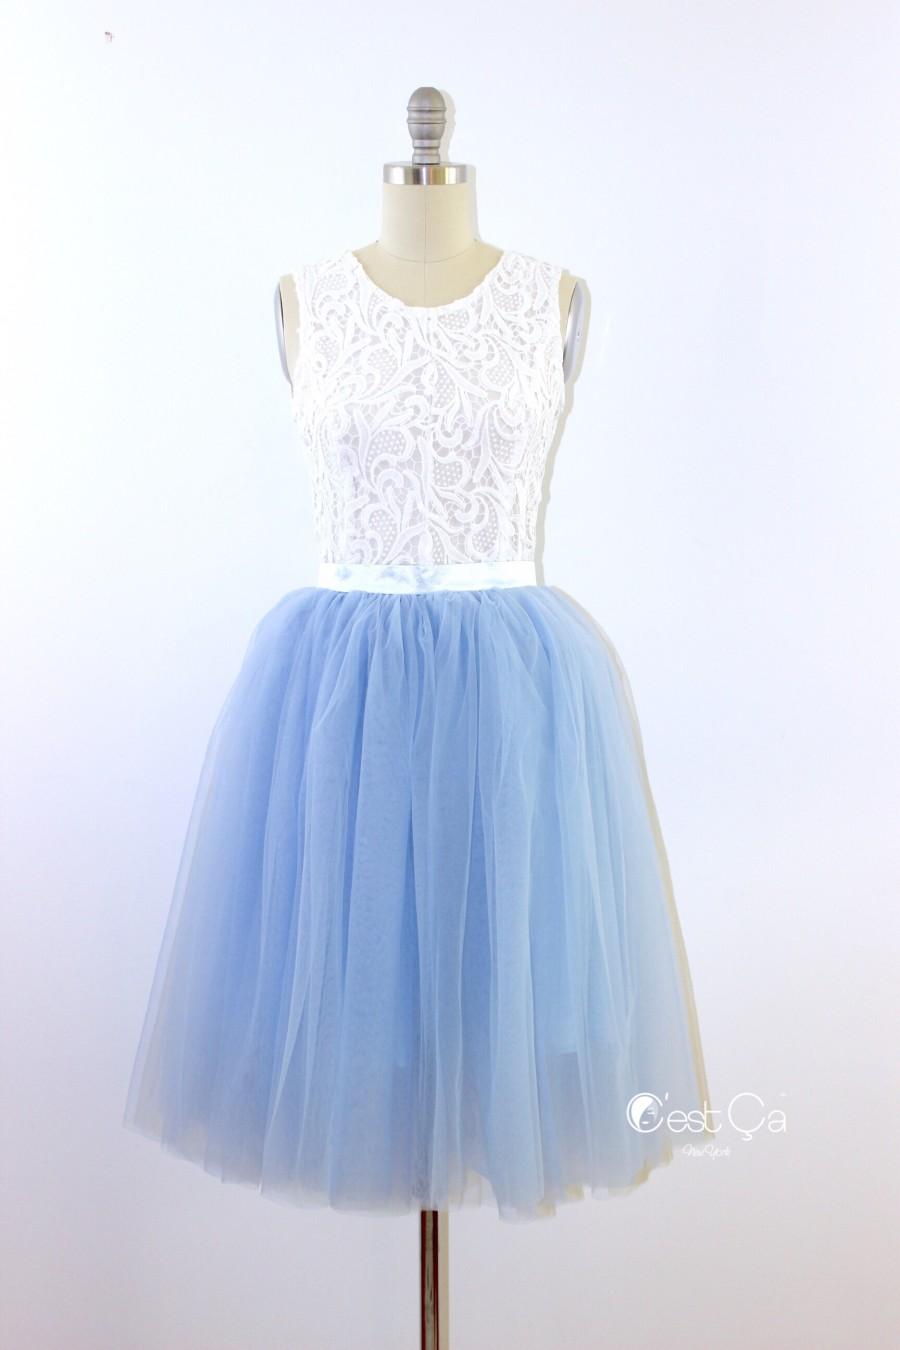 زفاف - Colette Serenity Blue Tulle Skirt - Length 26" - C'est Ça New York